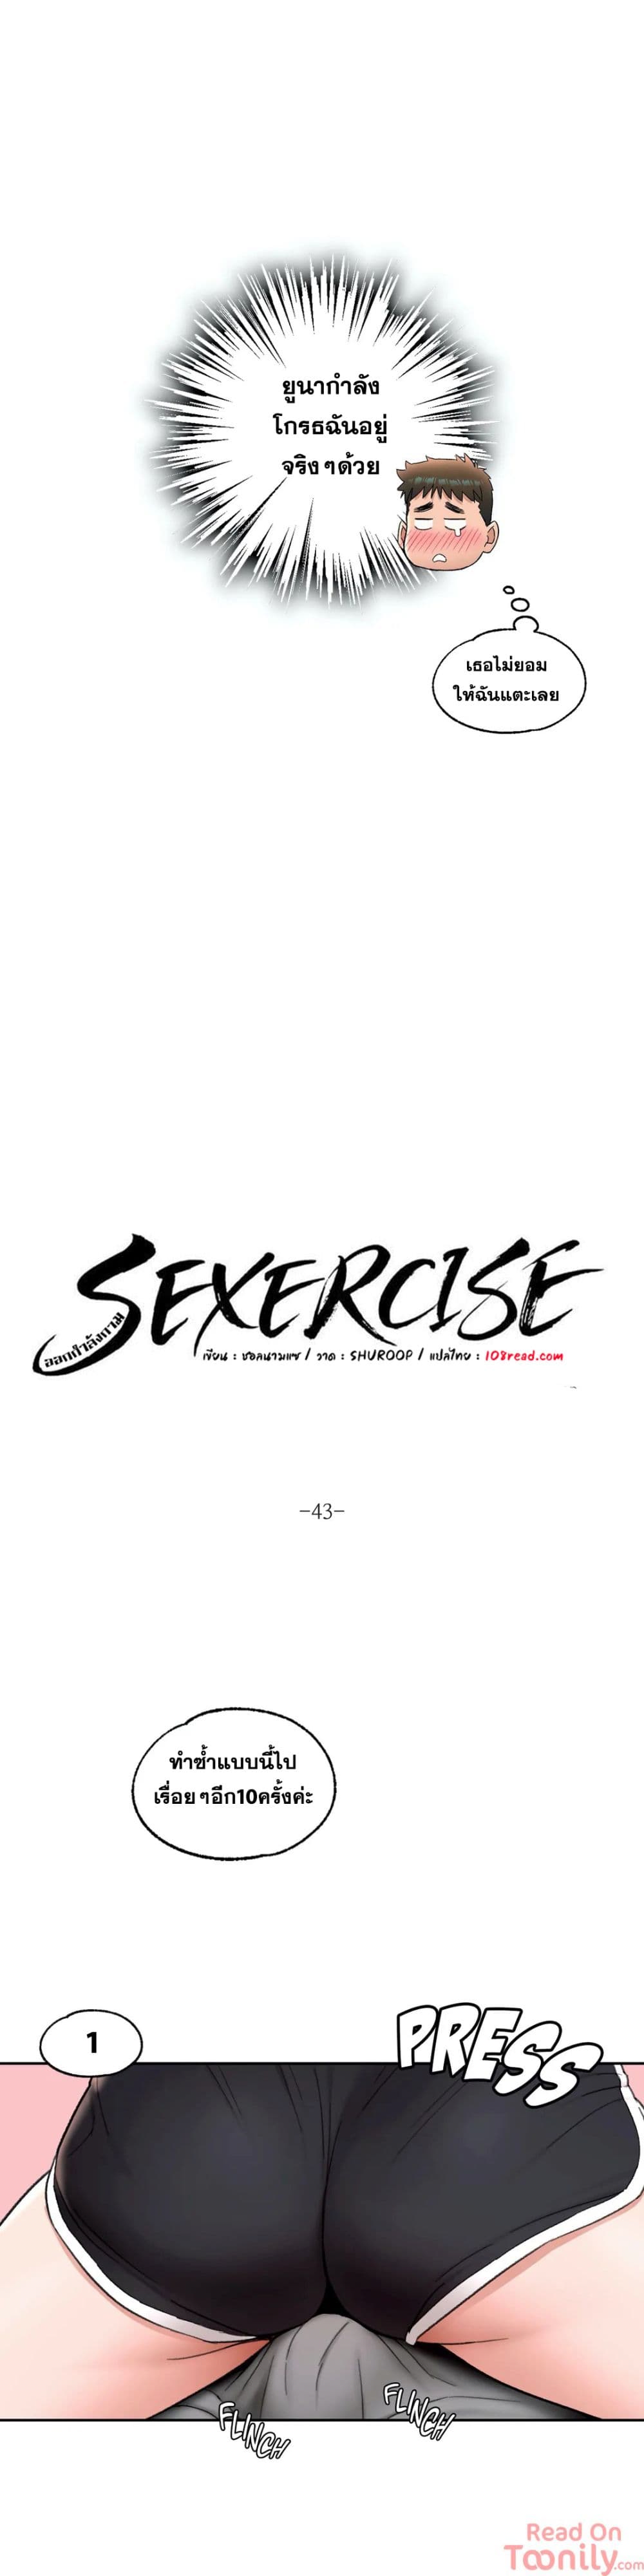 Sexercise 43 03